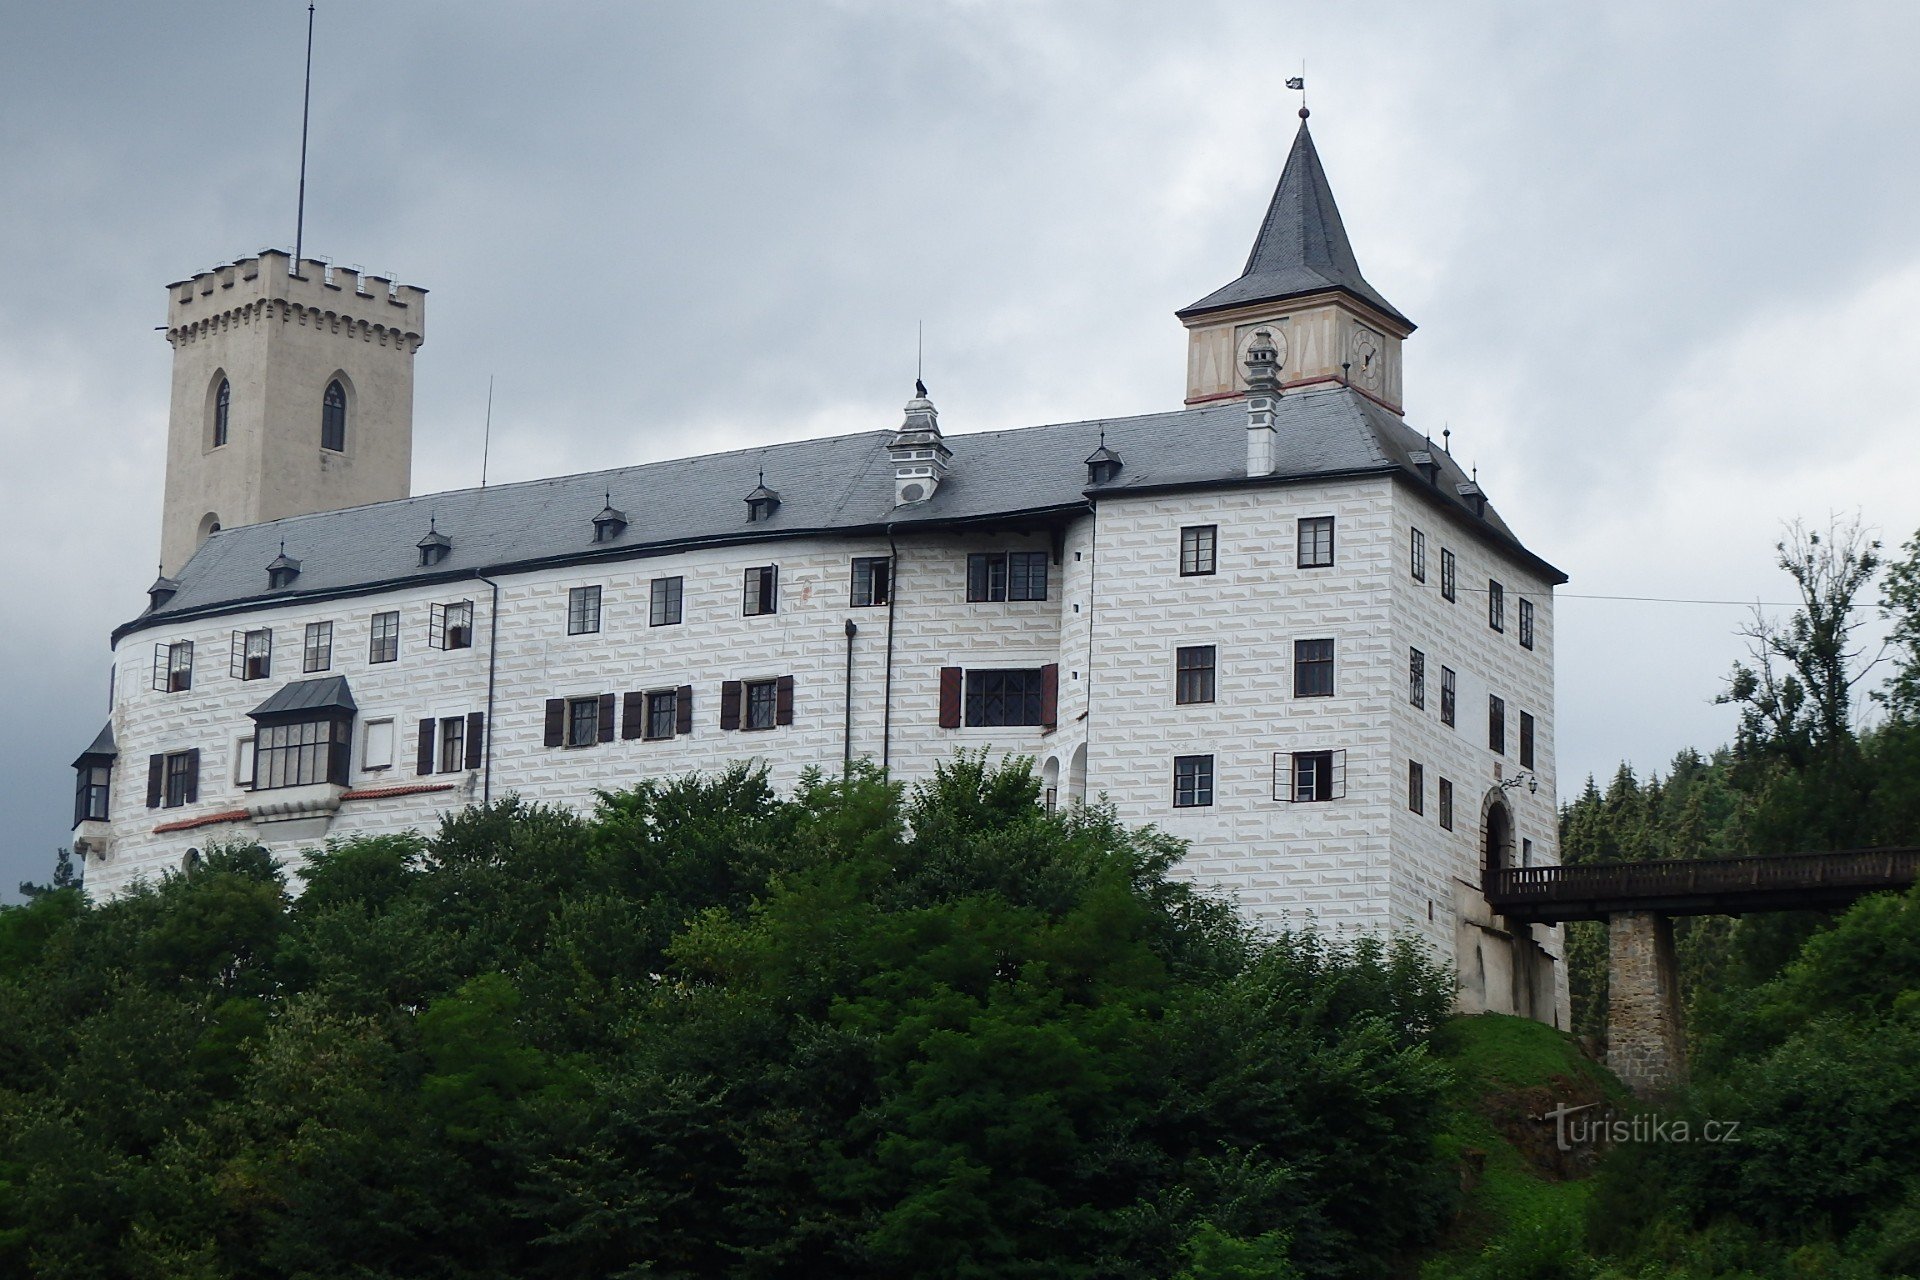 Castle Rosenberg